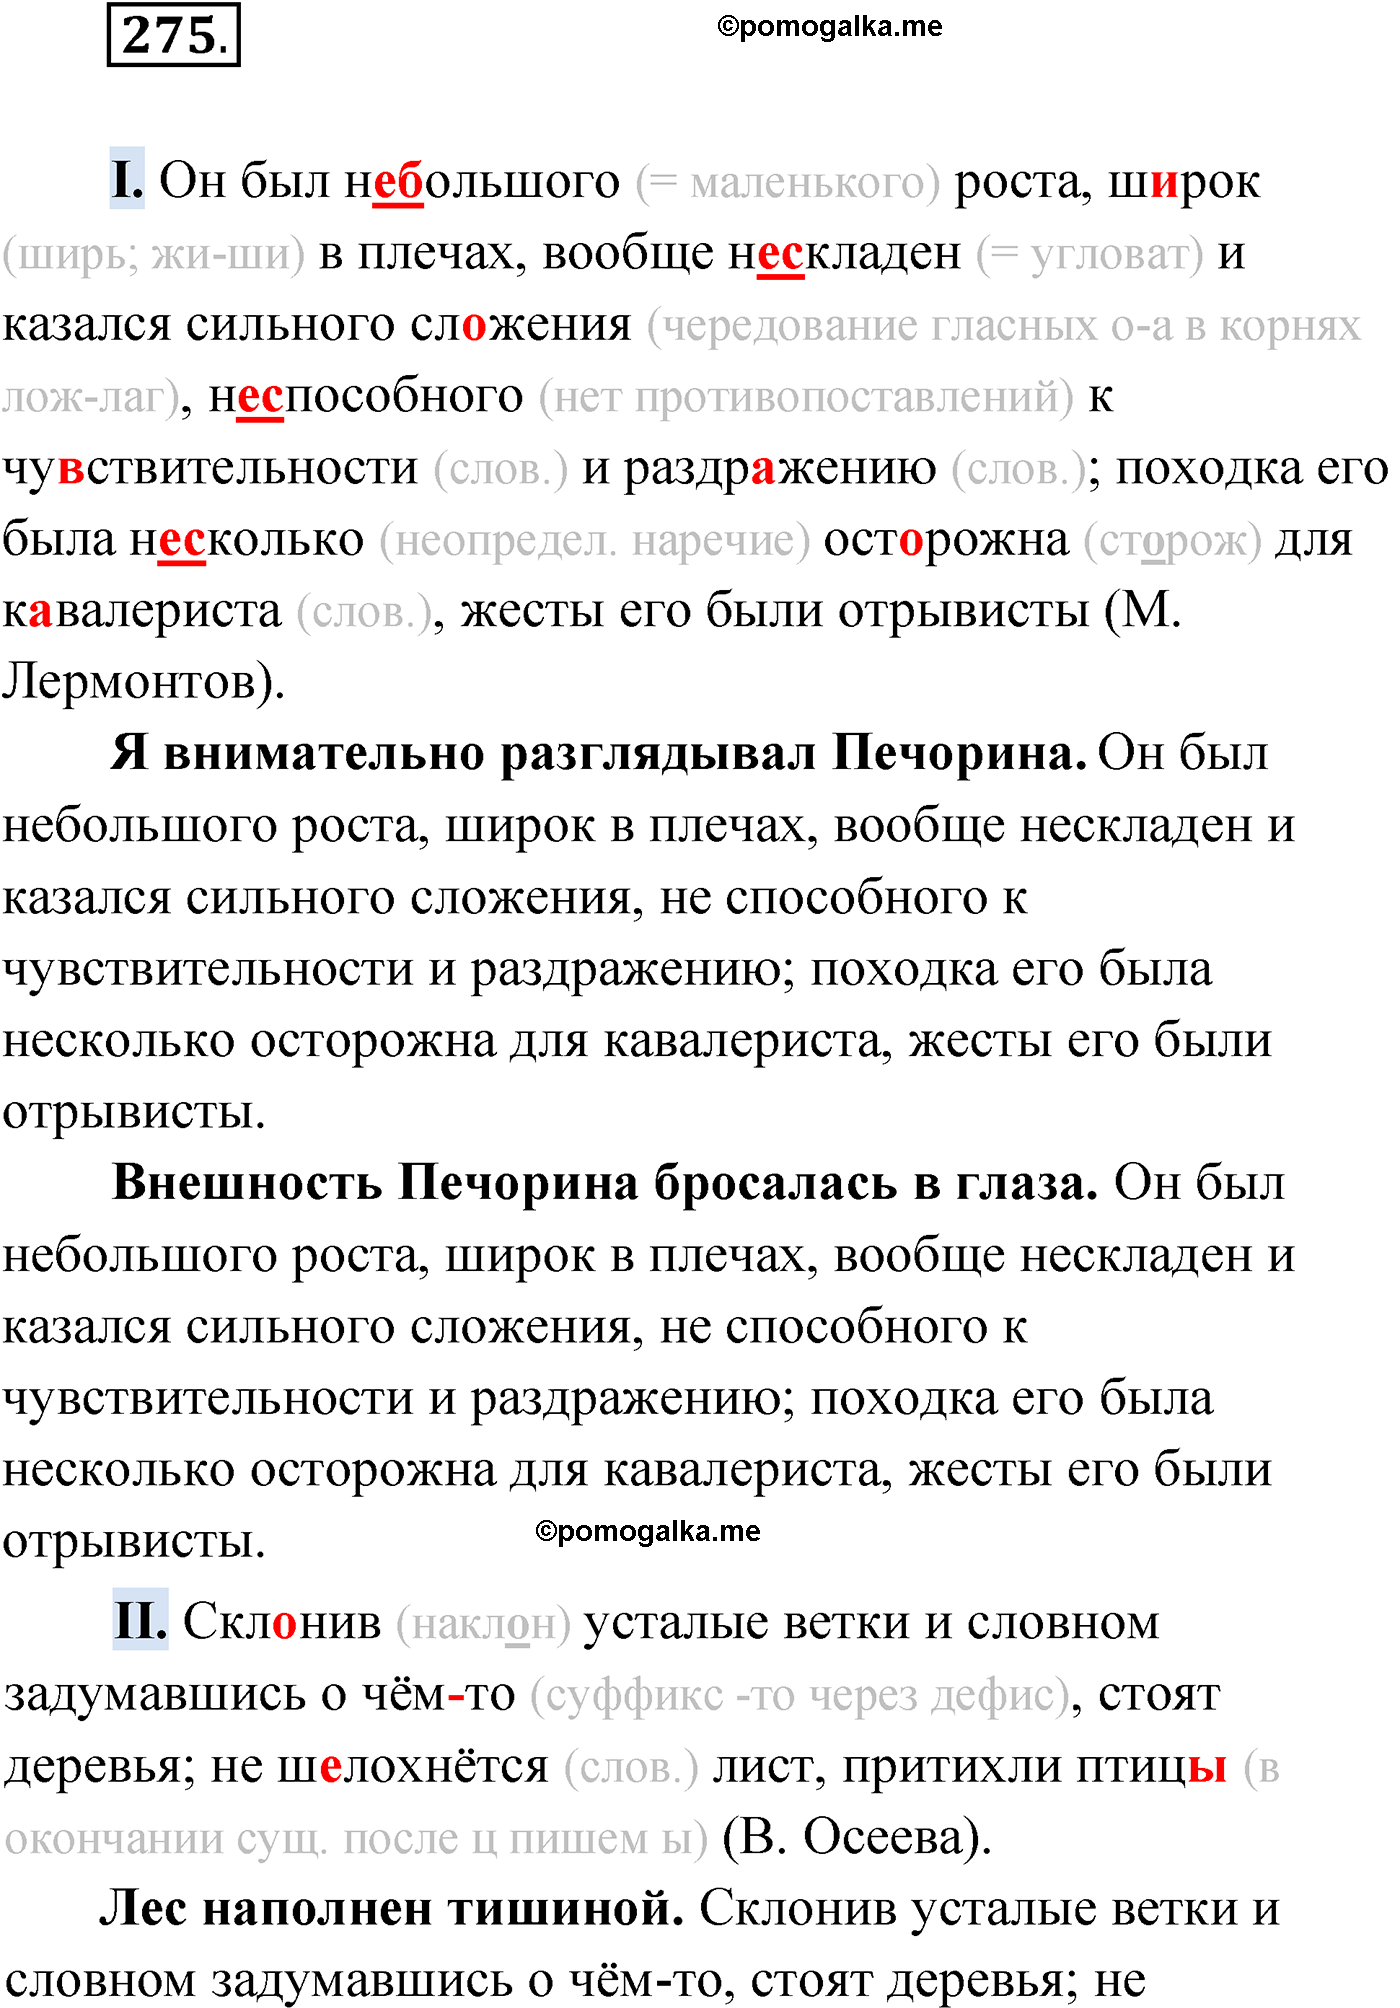 упражнение №275 русский язык 9 класс Мурина 2019 год